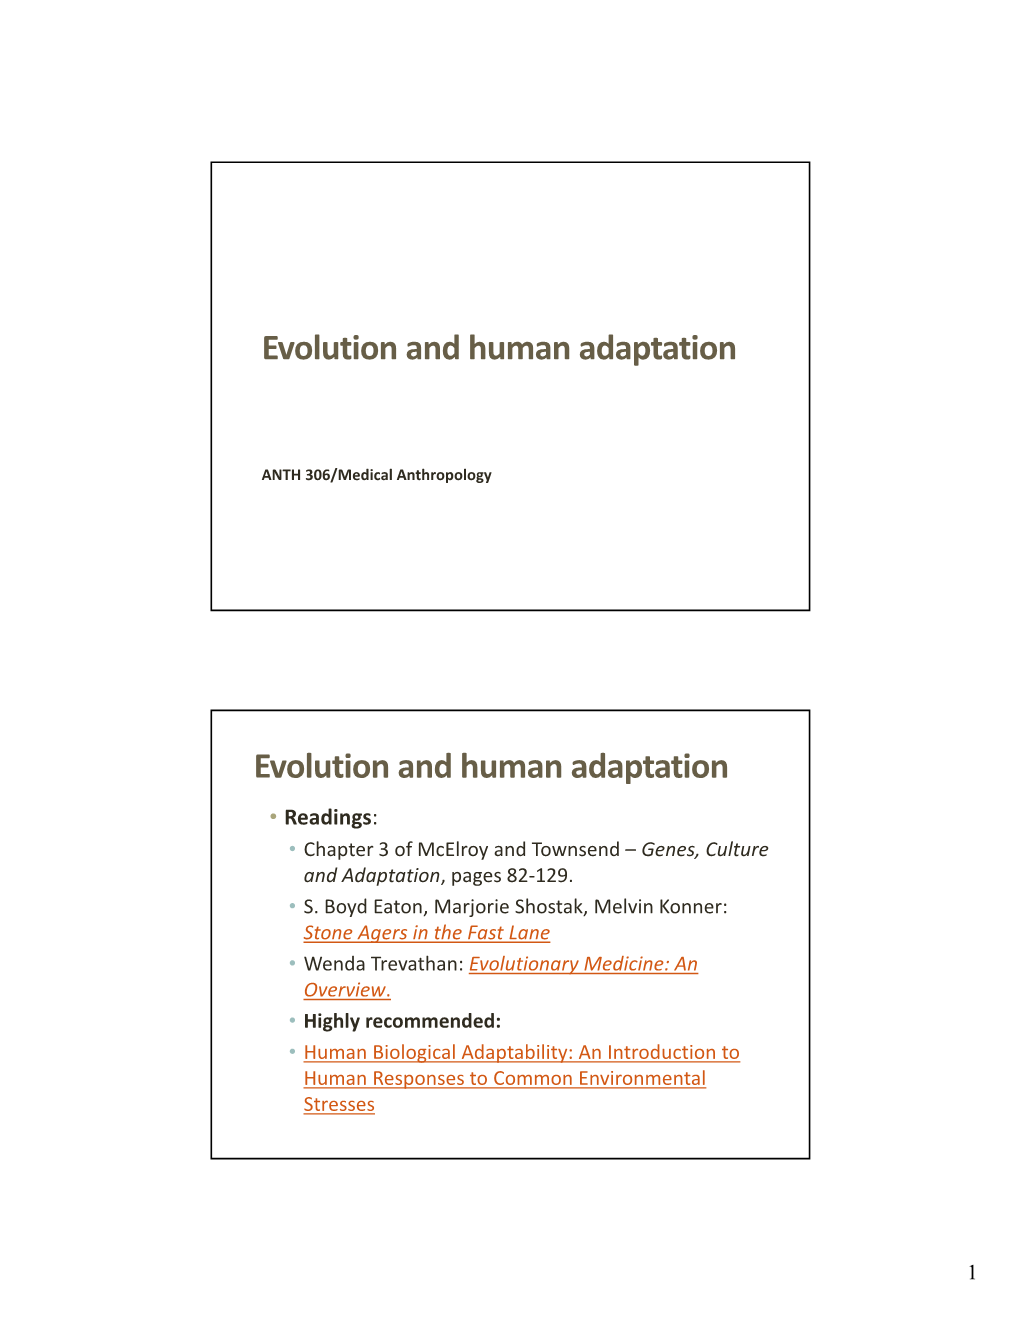 Evolution and Human Adaptation